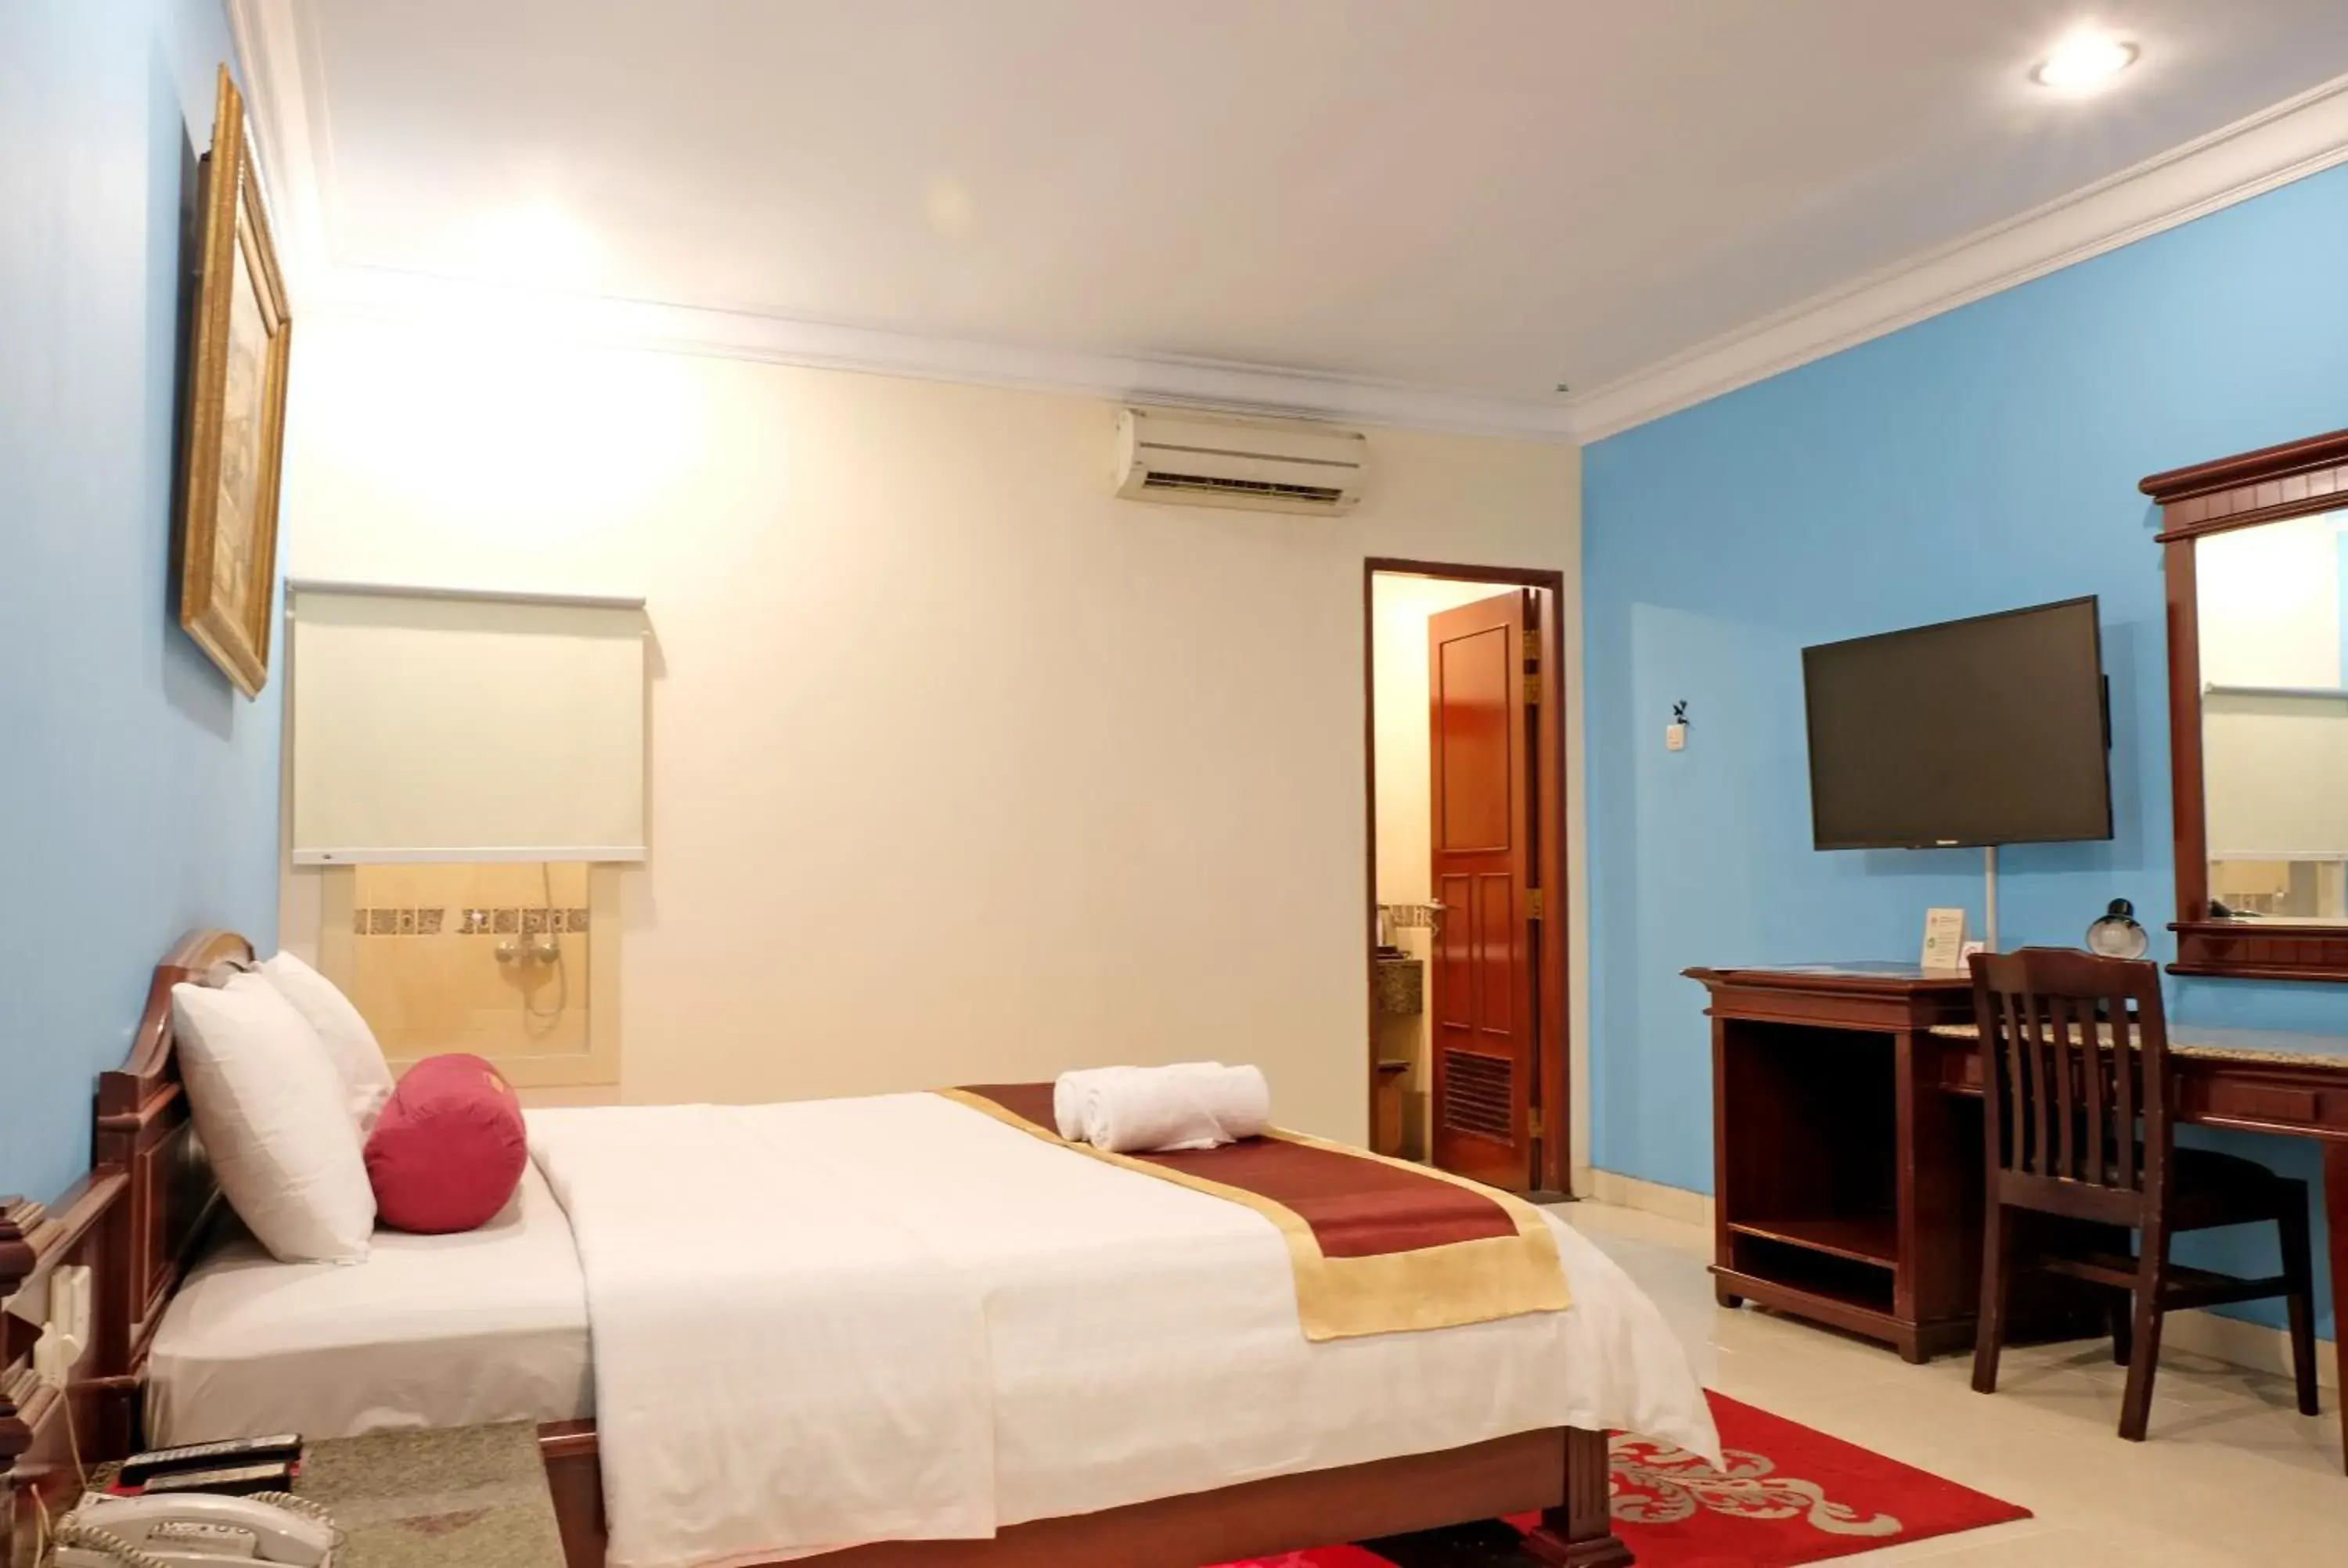 Bedroom, Bed in BI Executive Hotel